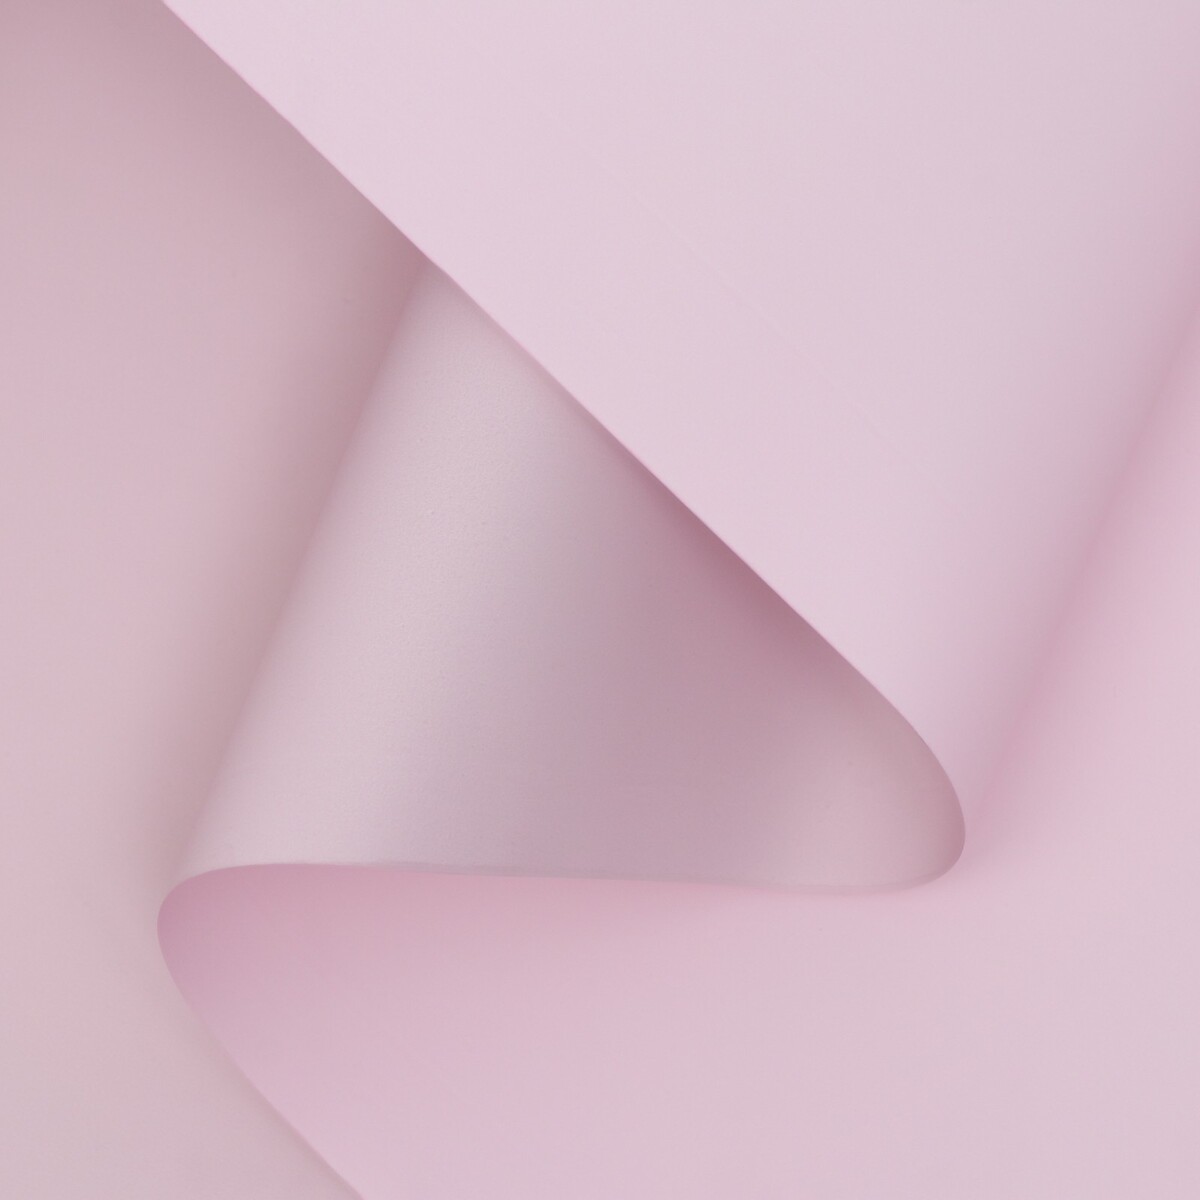 Пленка матовая двухсторонняя , пастельная серия, 65 мкм пастельный, розовый, 0,5 x 10 м пленка матовая 57см 10м светло розовый 165